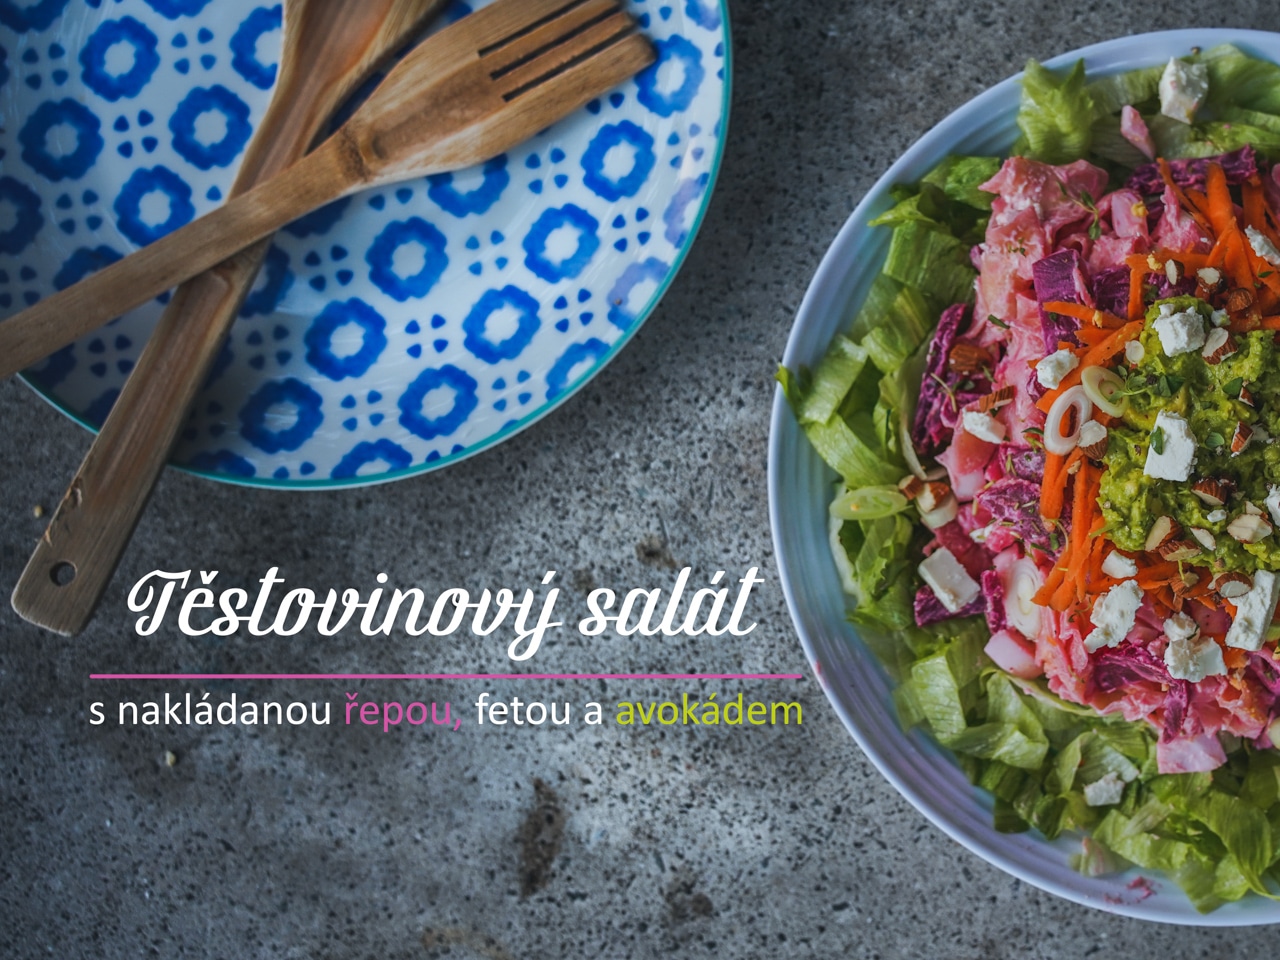 Těstovinový salát s nakládanou řepou, fetou a naloží avokádové pasty